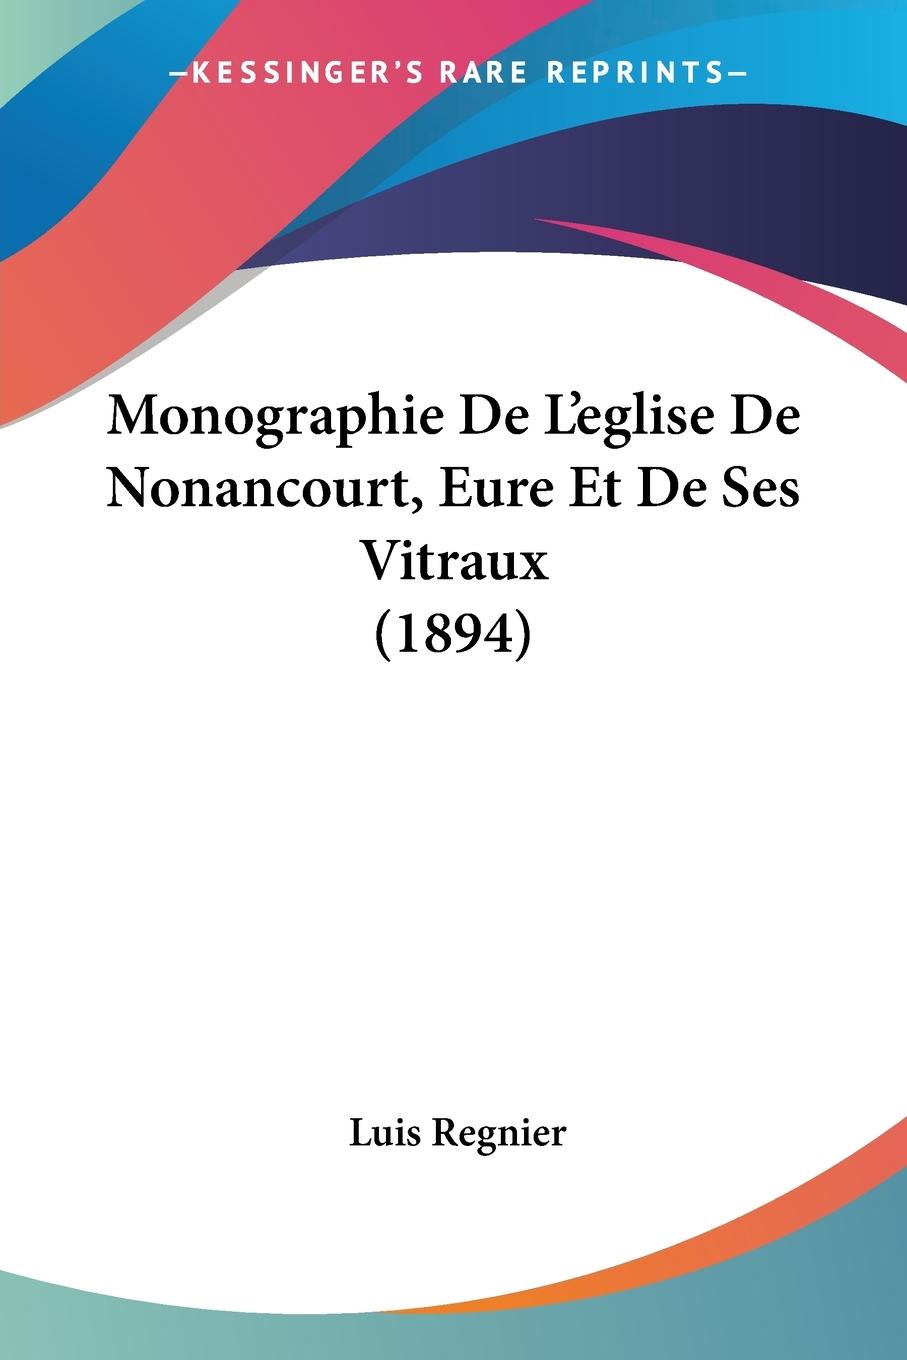 Monographie De L eglise De Nonancourt, Eure Et De Ses Vitraux (1894) - Regnier, Luis